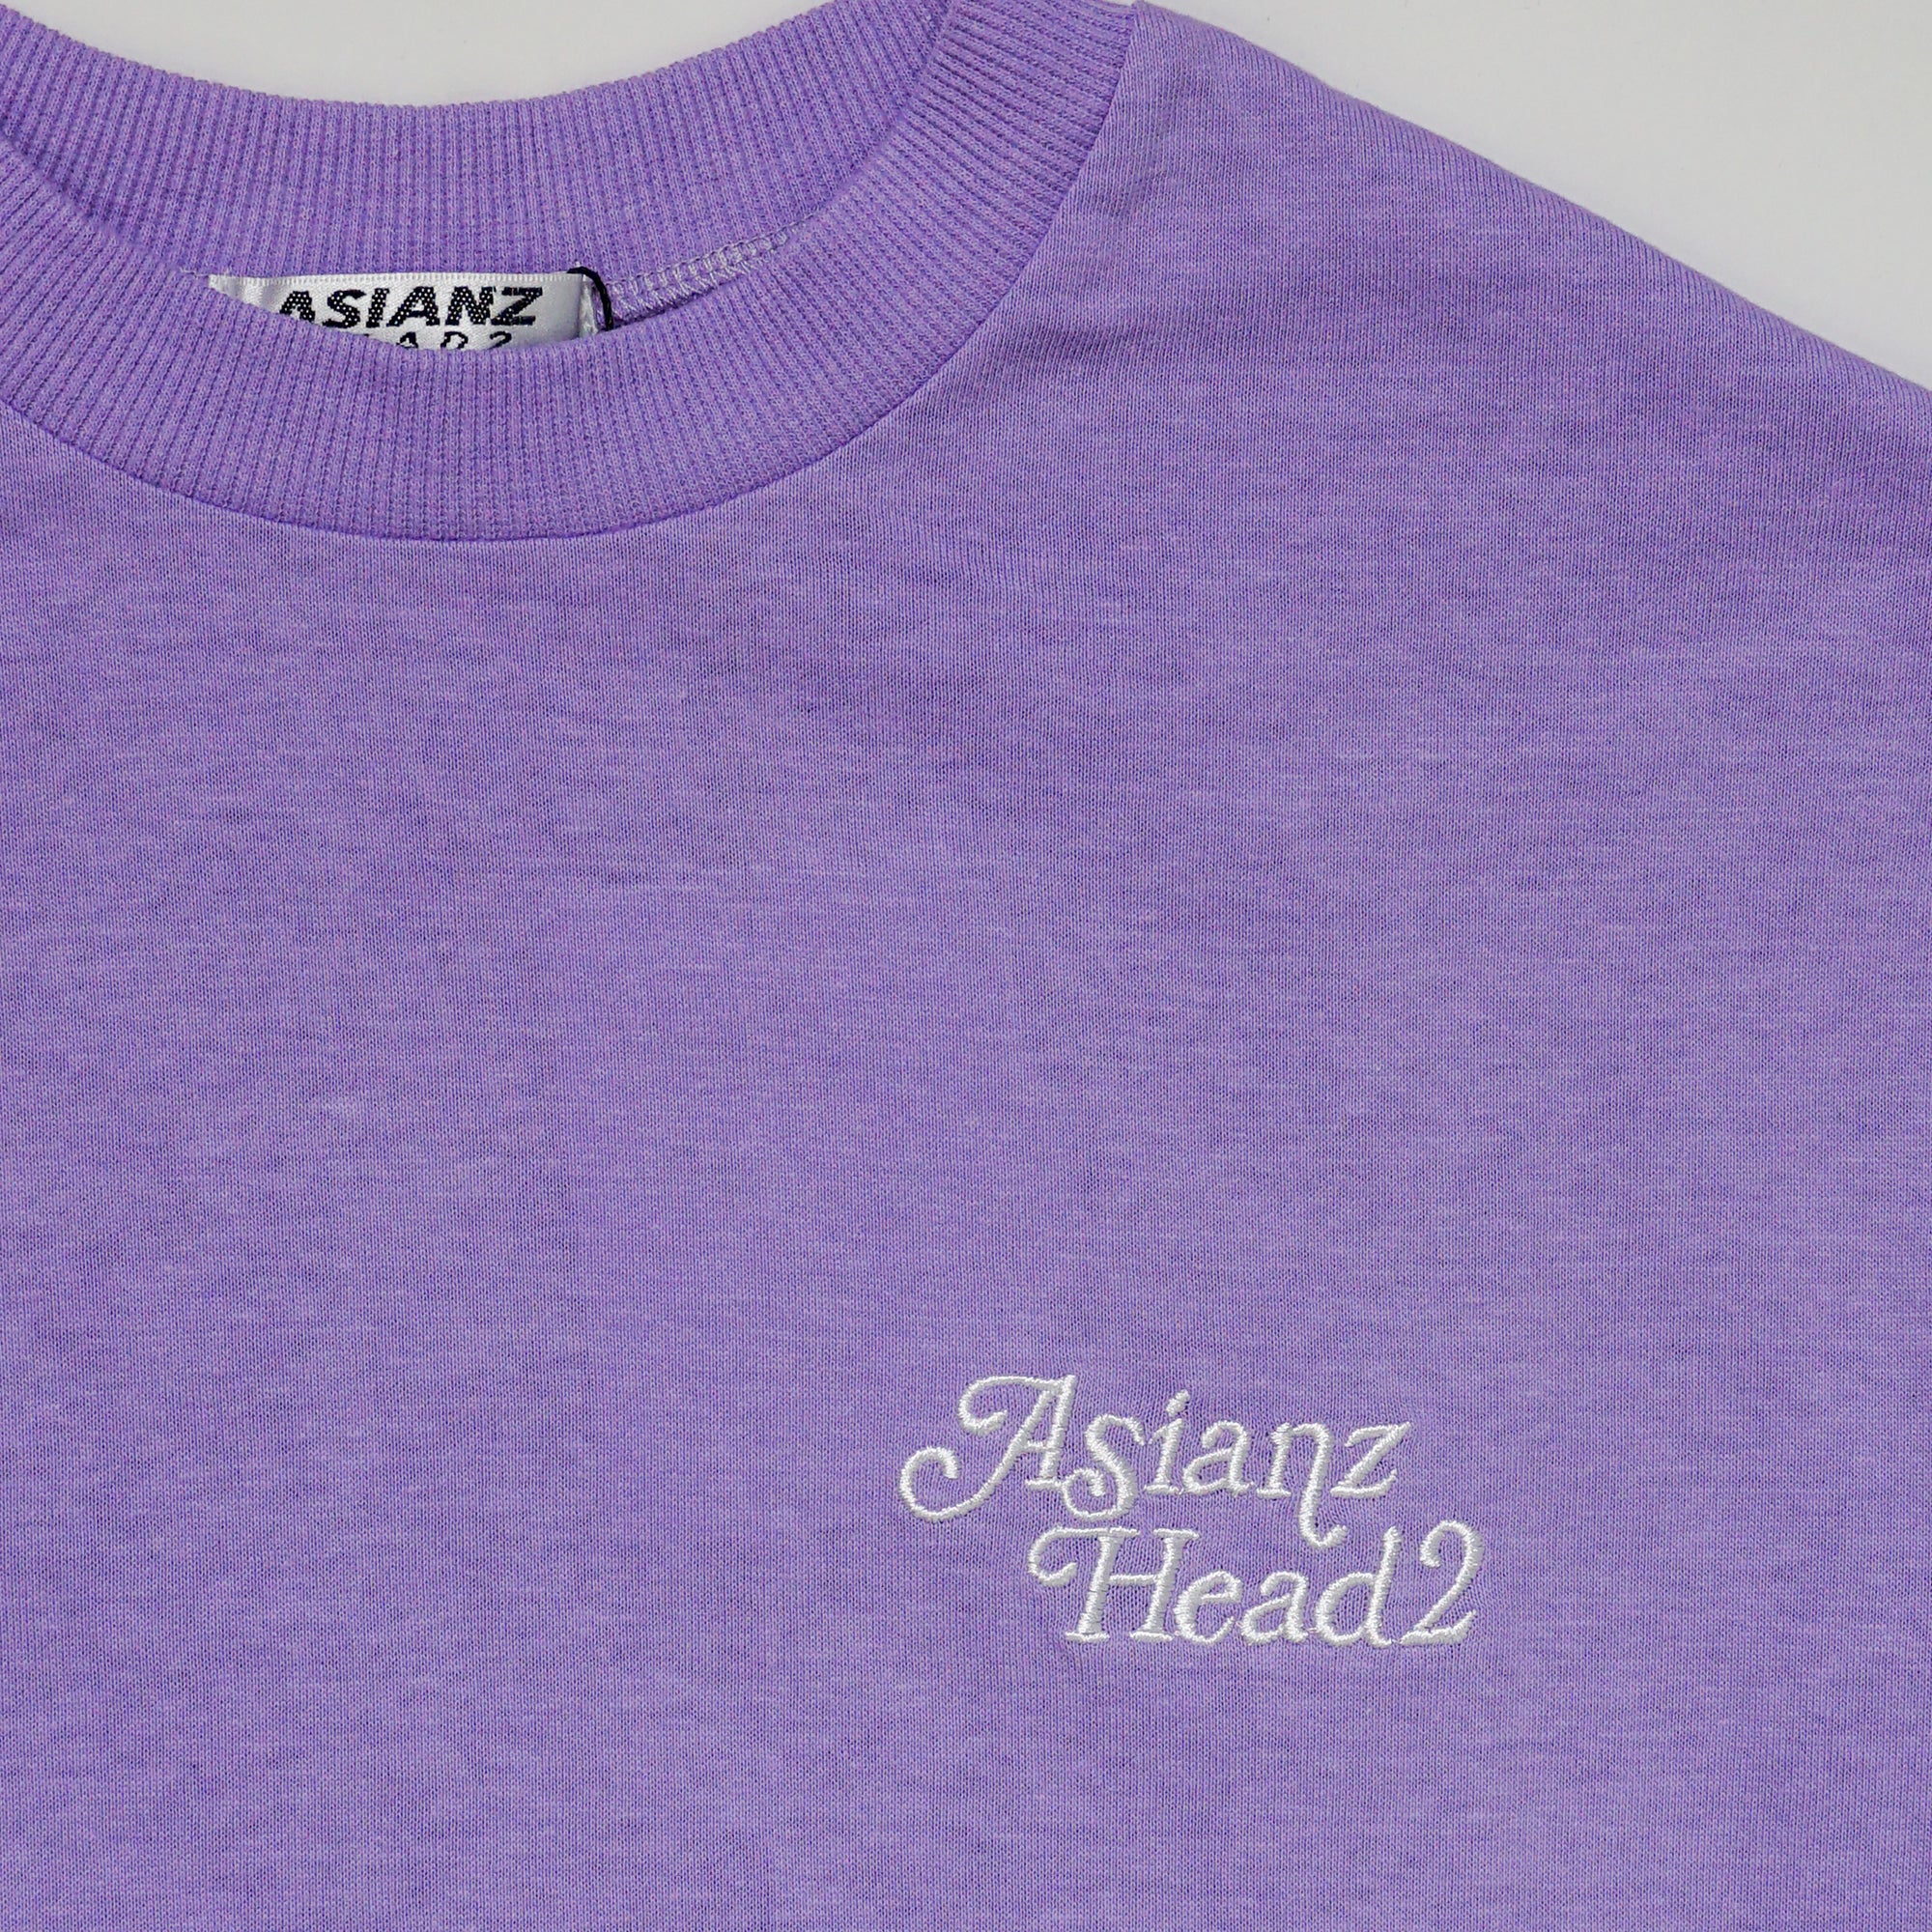 (40%オフ! セール商品)ASIANZ HEAD2 レトログラフィック Tシャツ キッズウェアー